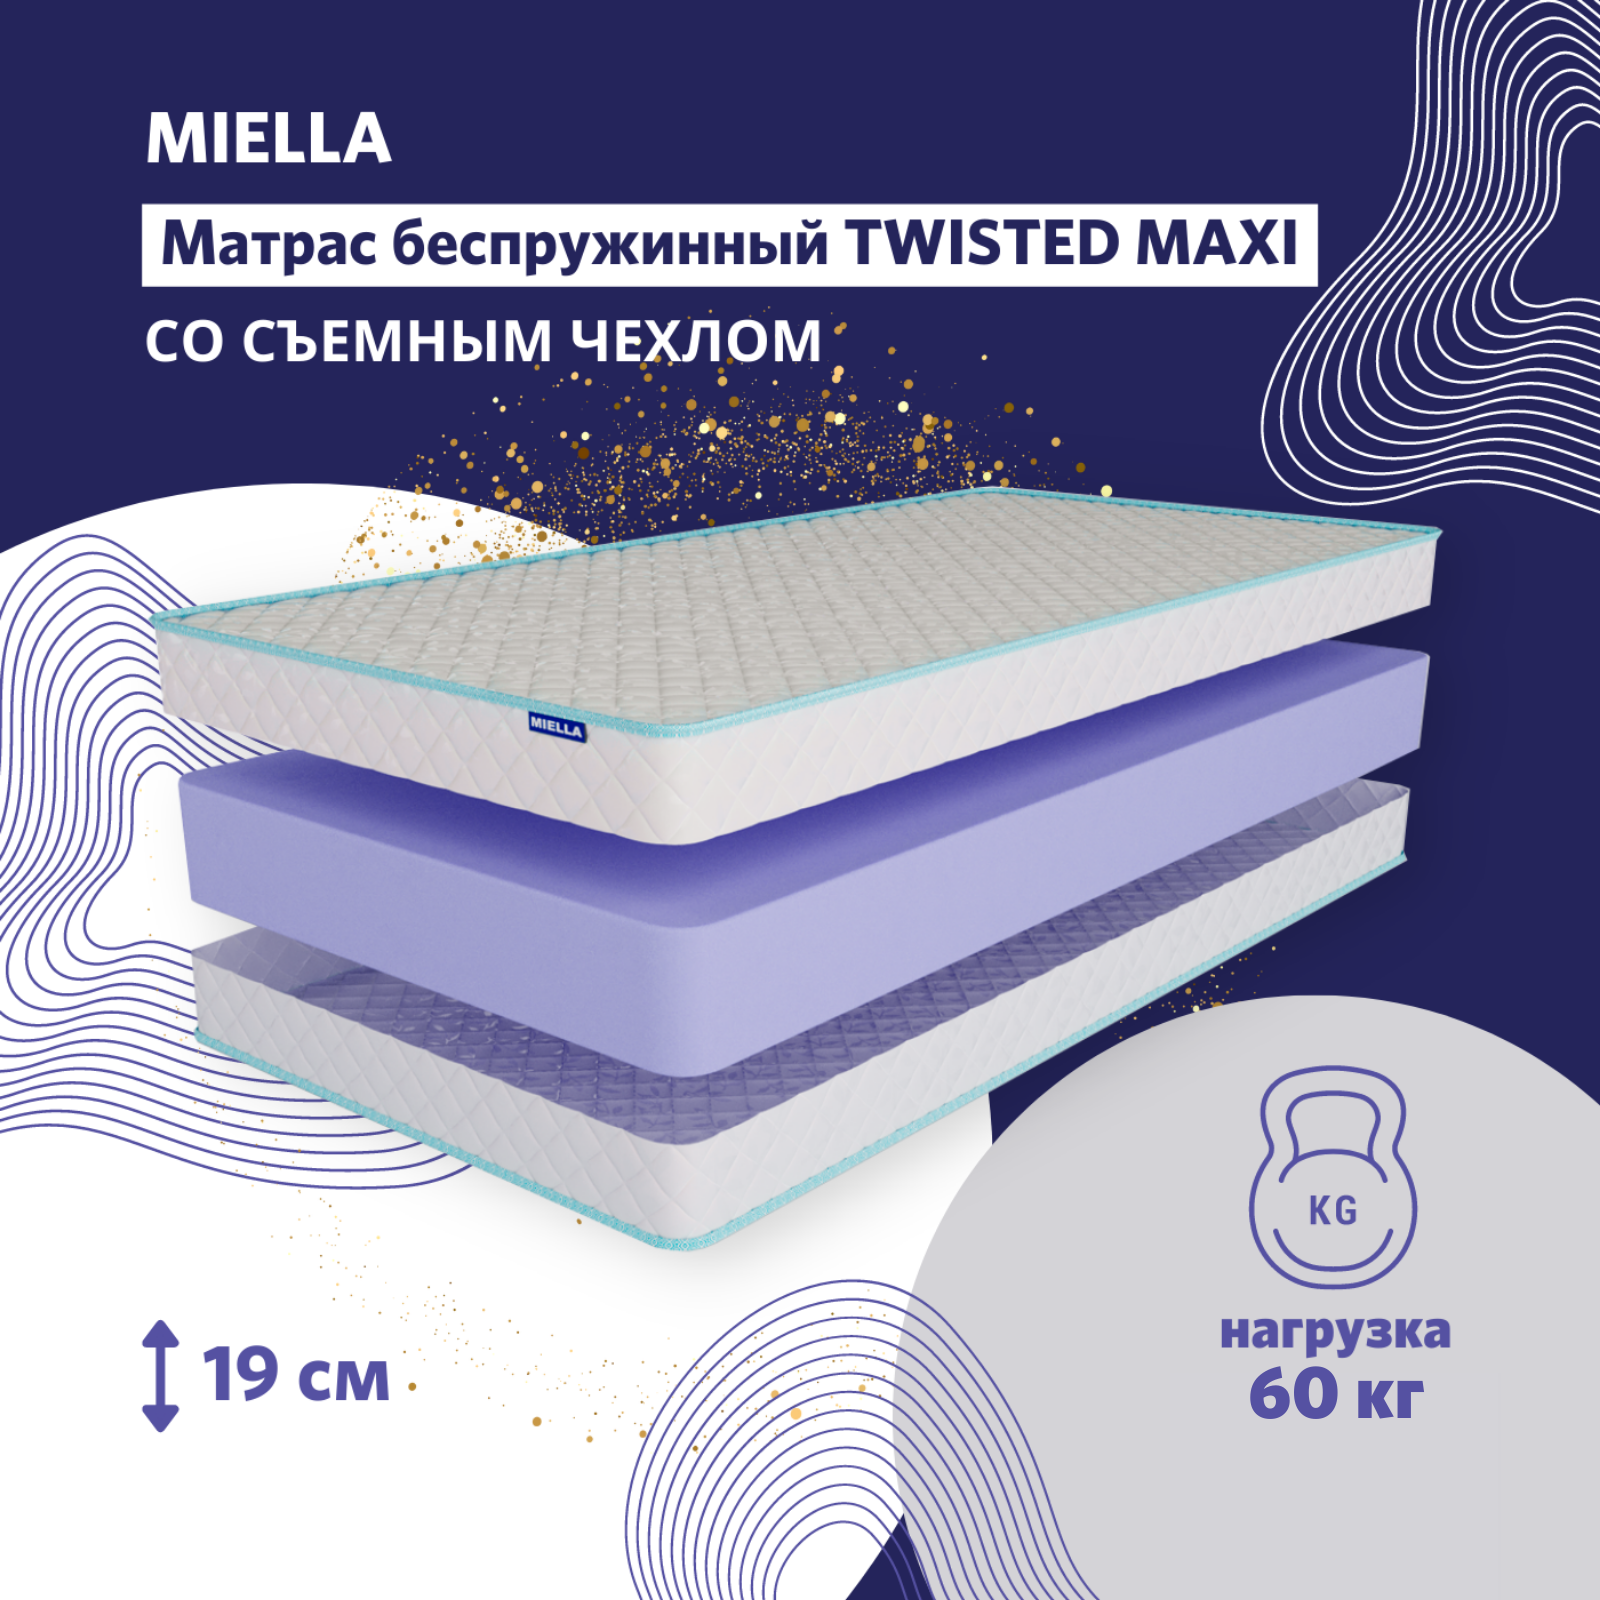 Матрас 120x60 анатомический беспружинный MIELLA Twisted Maxi